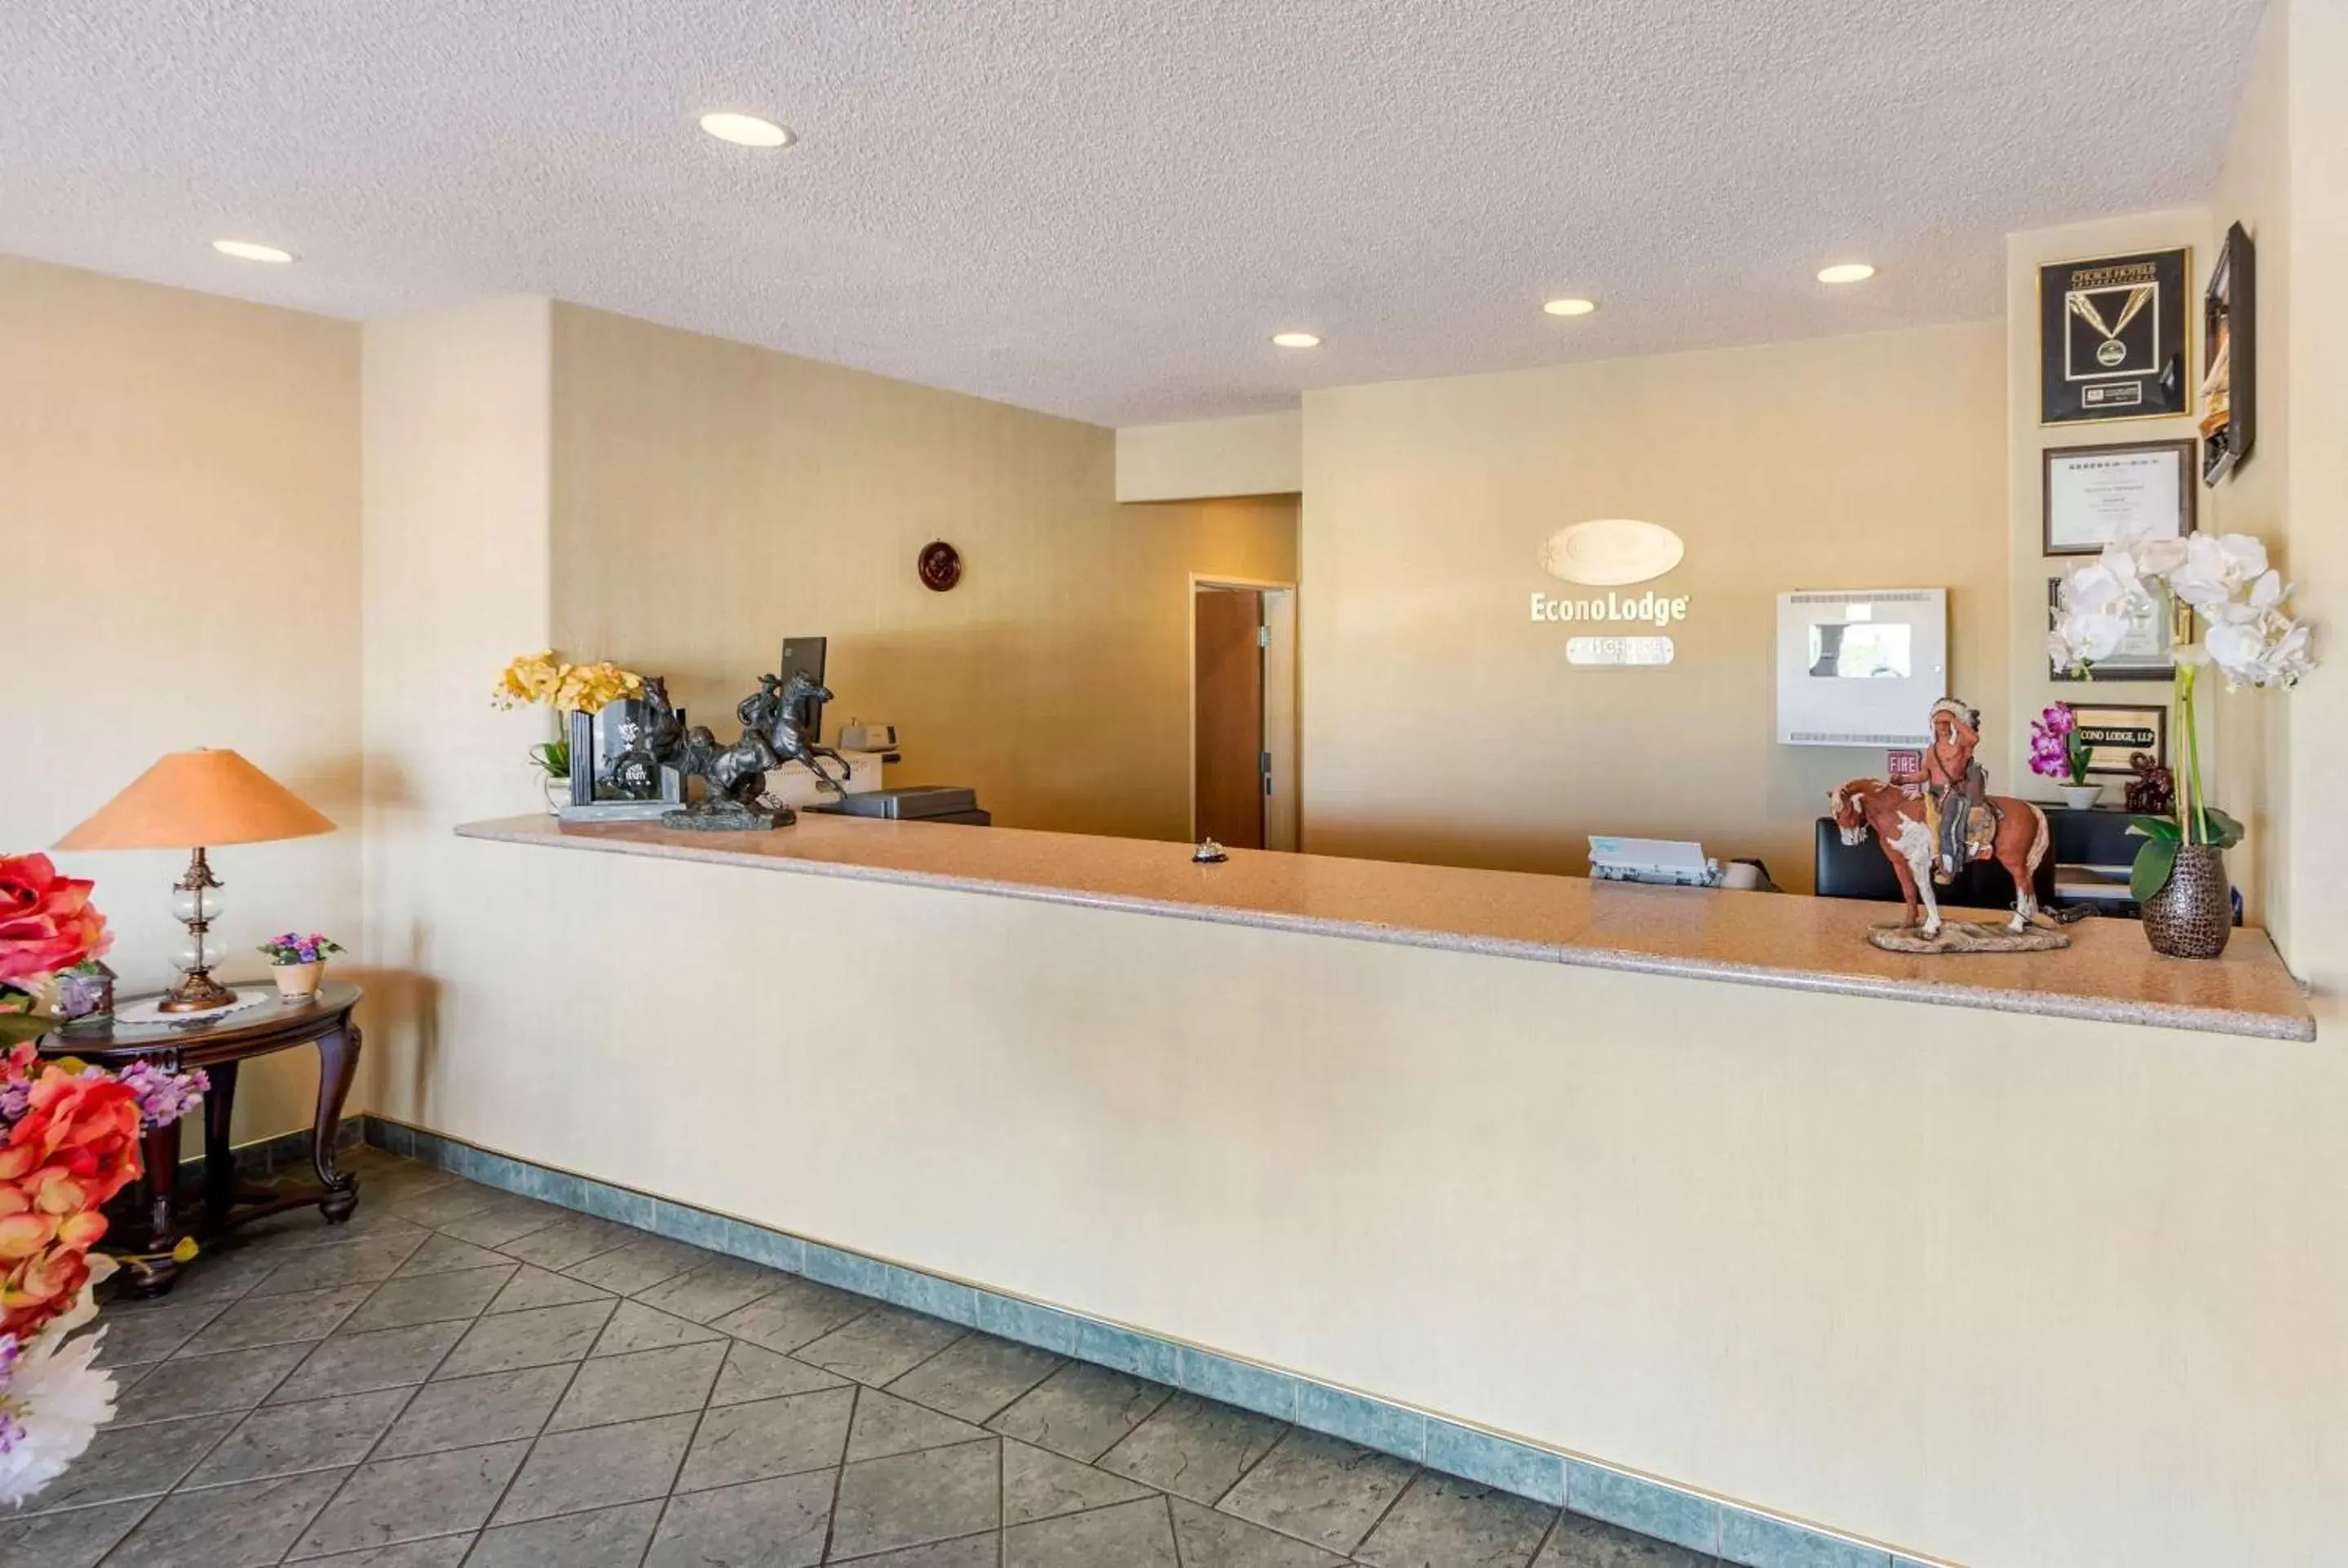 Lobby or reception, Lobby/Reception in Econo Lodge Airport/Colorado Springs